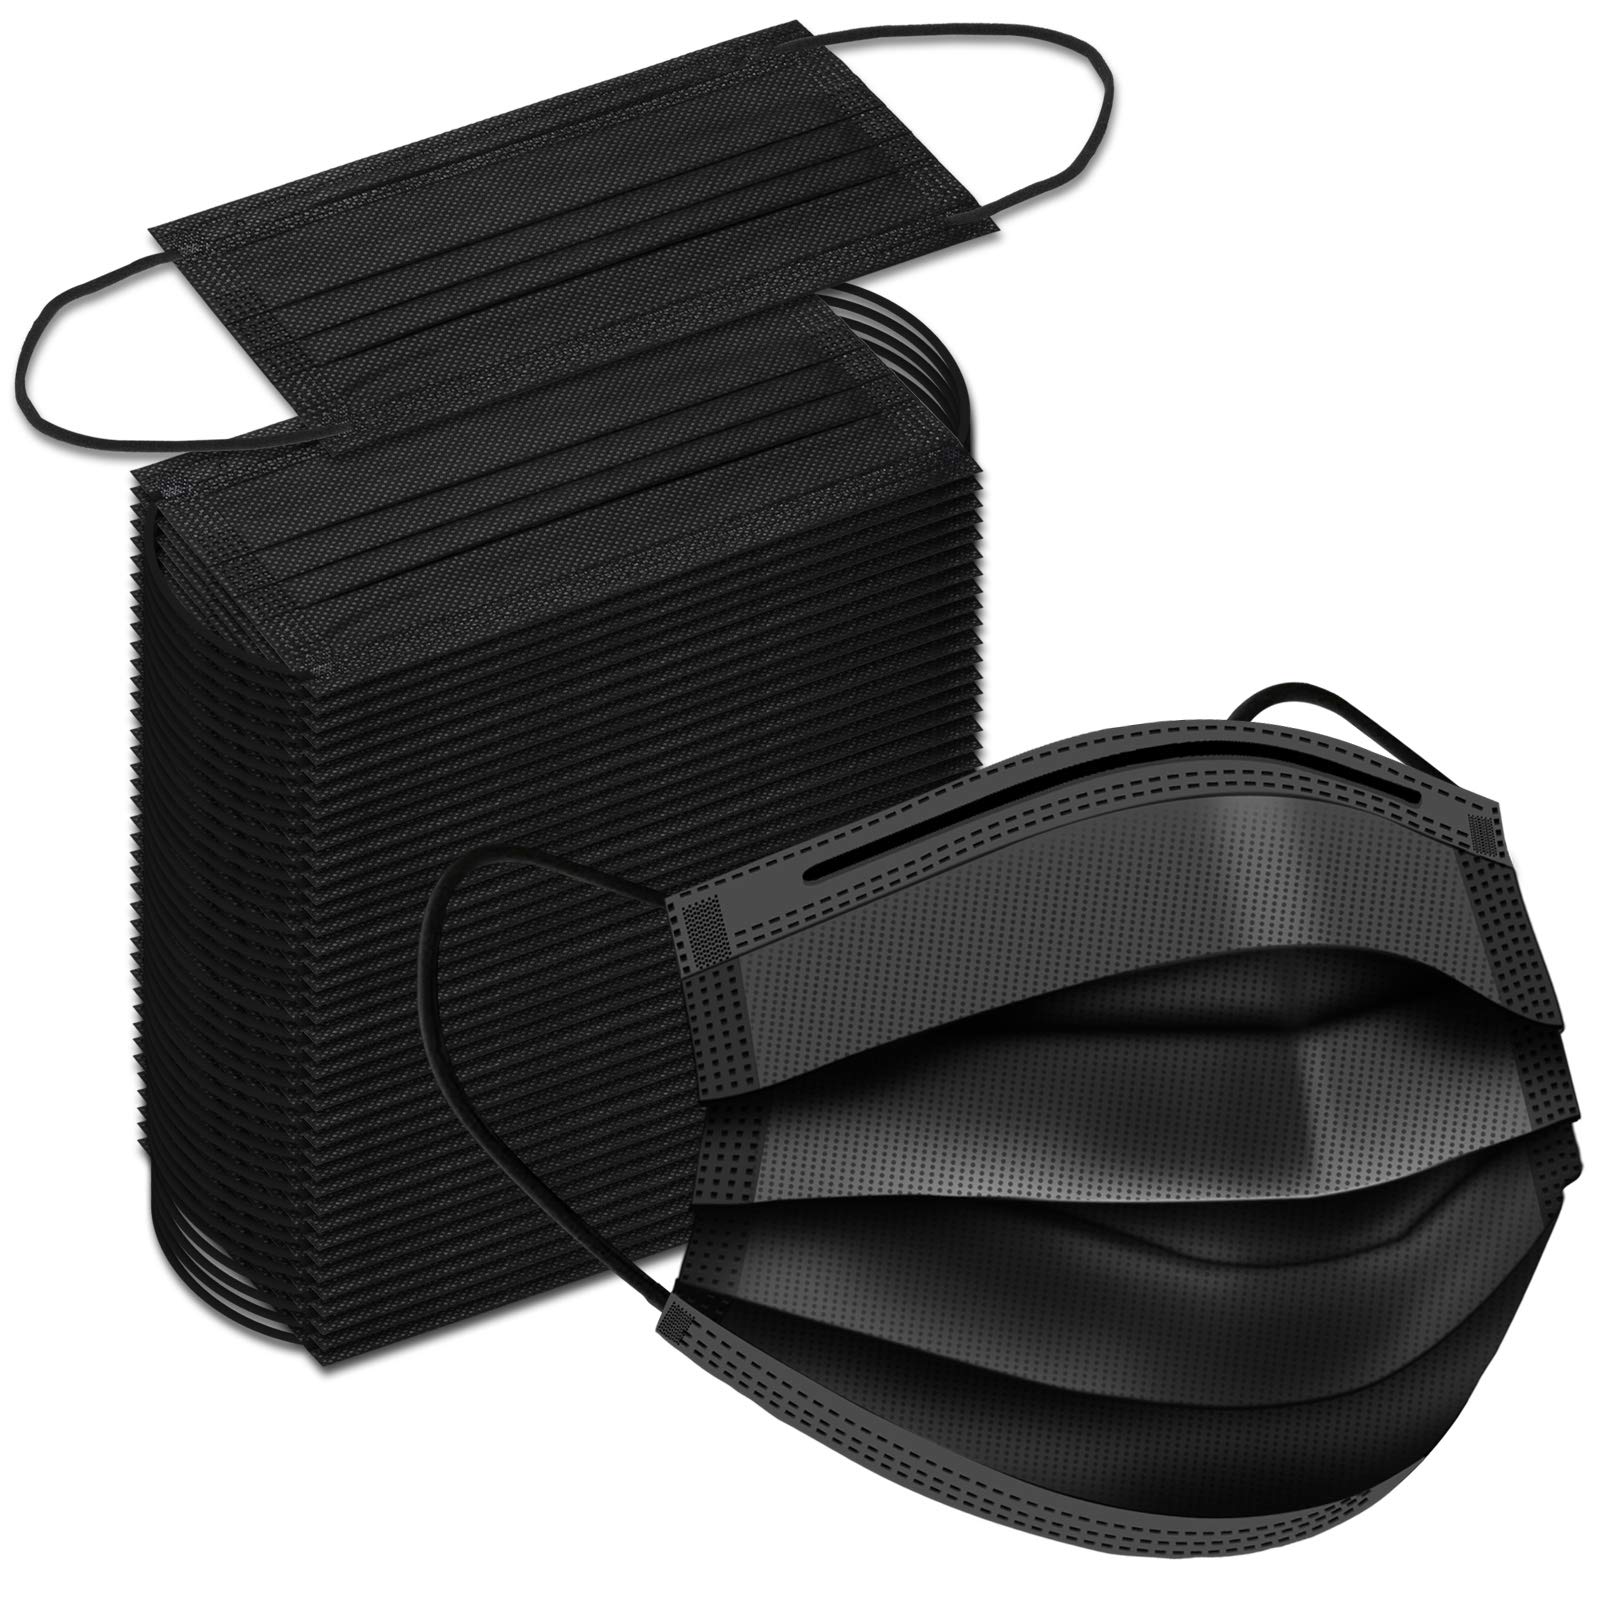 Black Disposable Face Masks 100 Pack Black Face Masks 3 Ply Filter ...